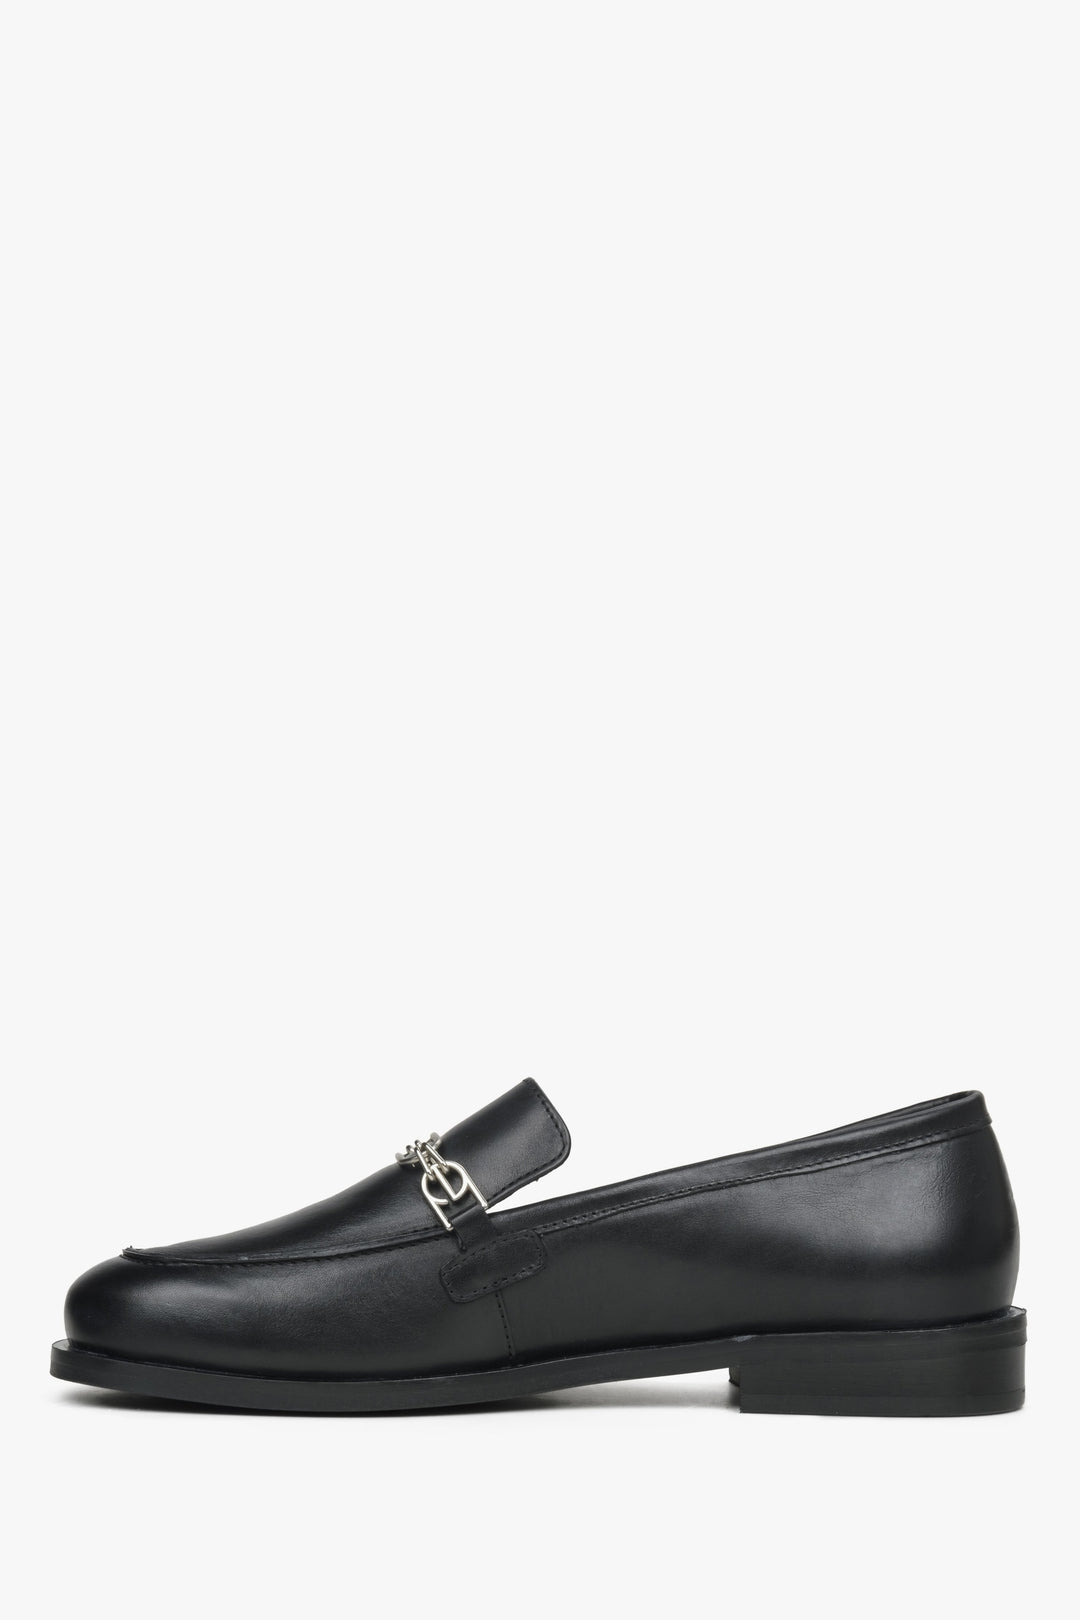 Women's black leather penny loafers Estro - shoe sideline.